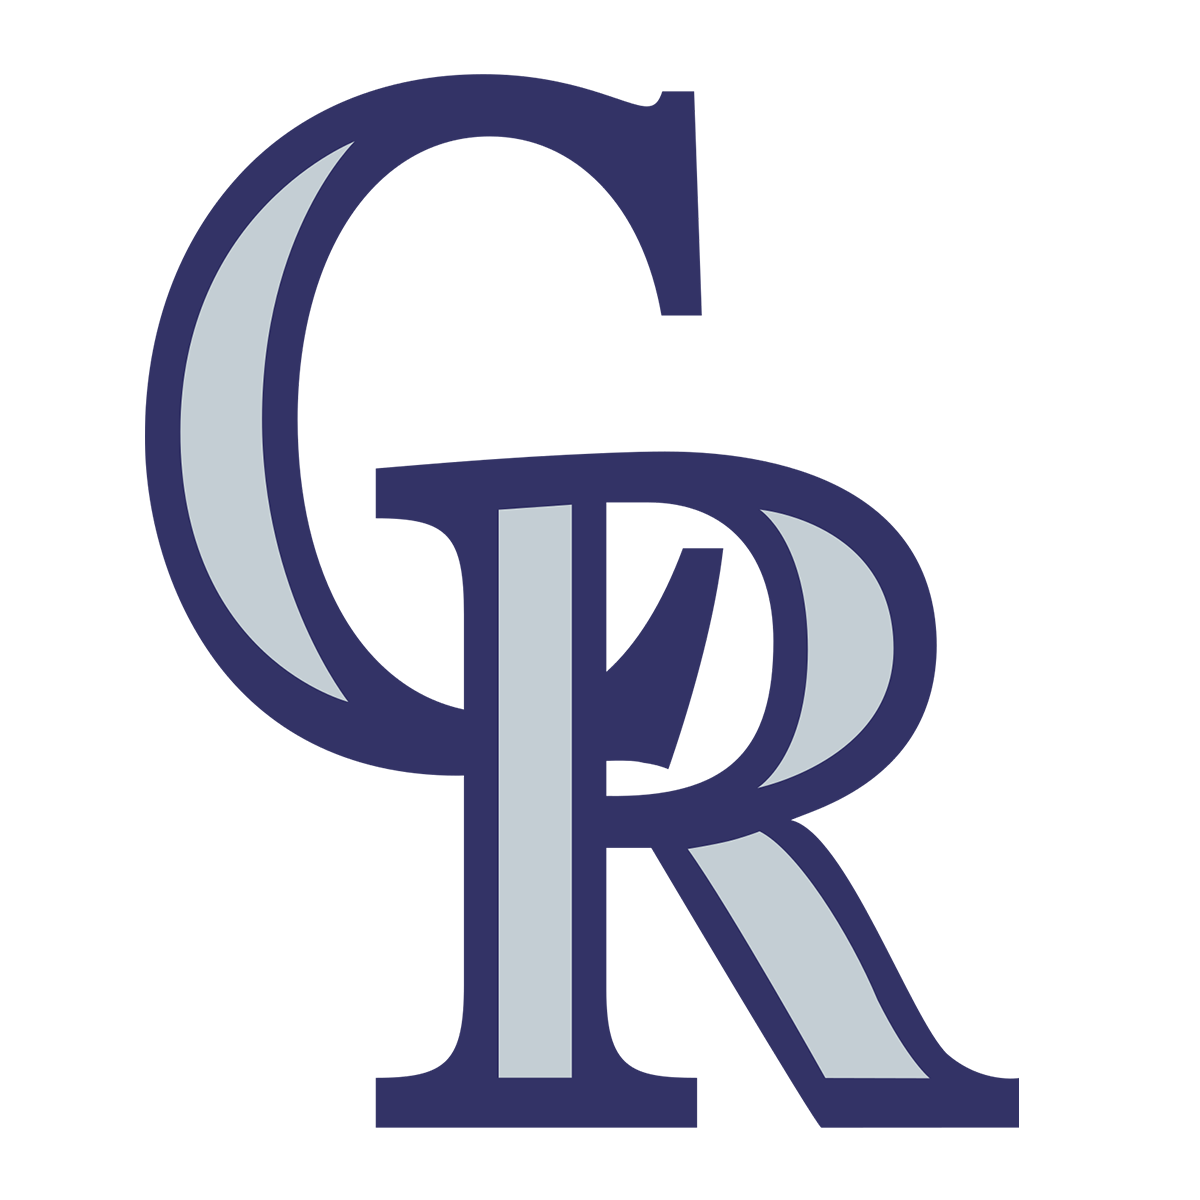 COLORADO ROCKIES Logo